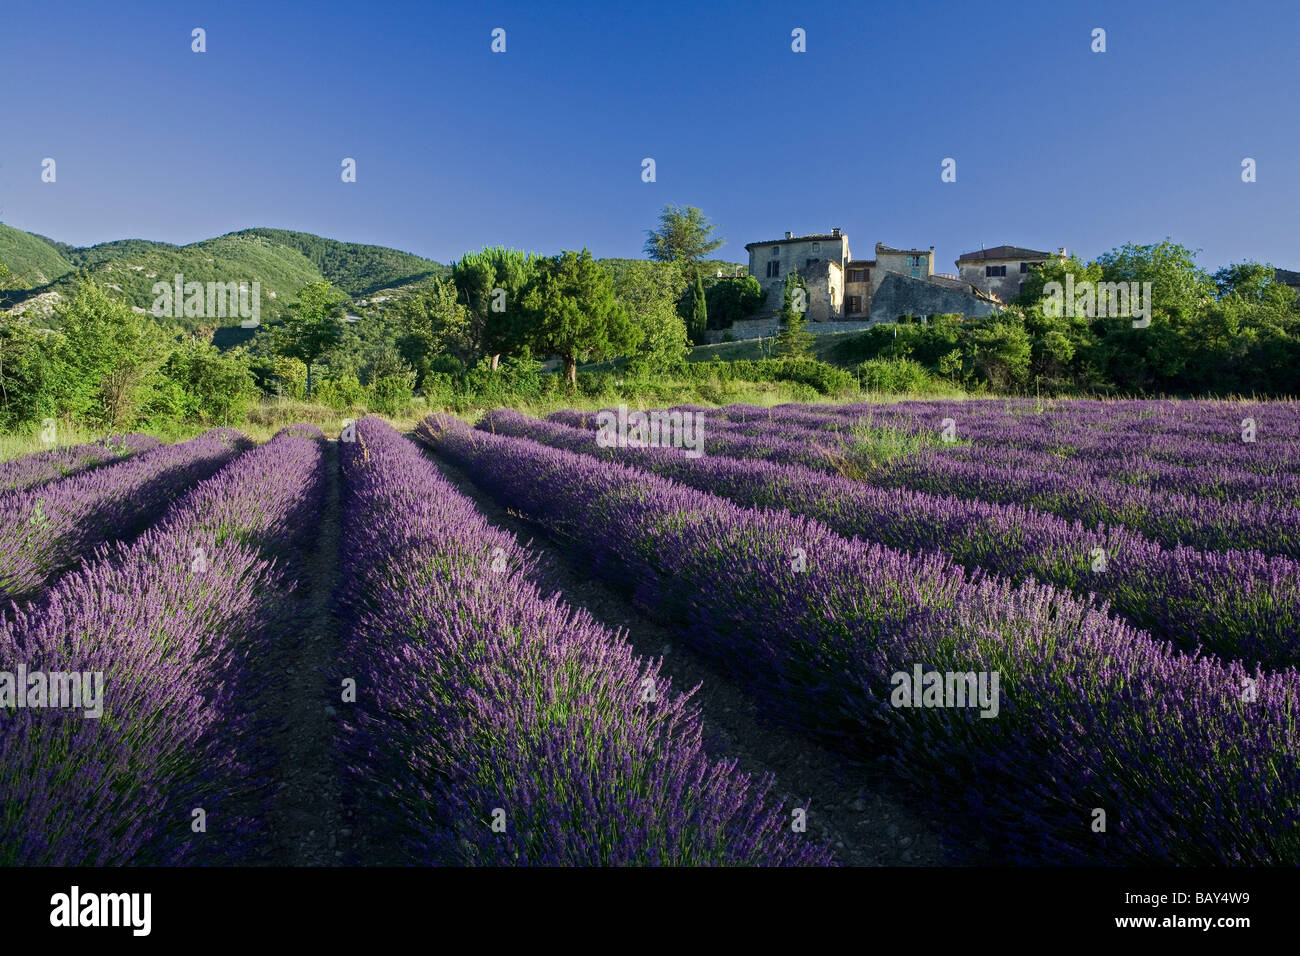 Champ de lavande en fleurs devant le village d'Auribeau, Luberon, Vaucluse, Provence, France Banque D'Images